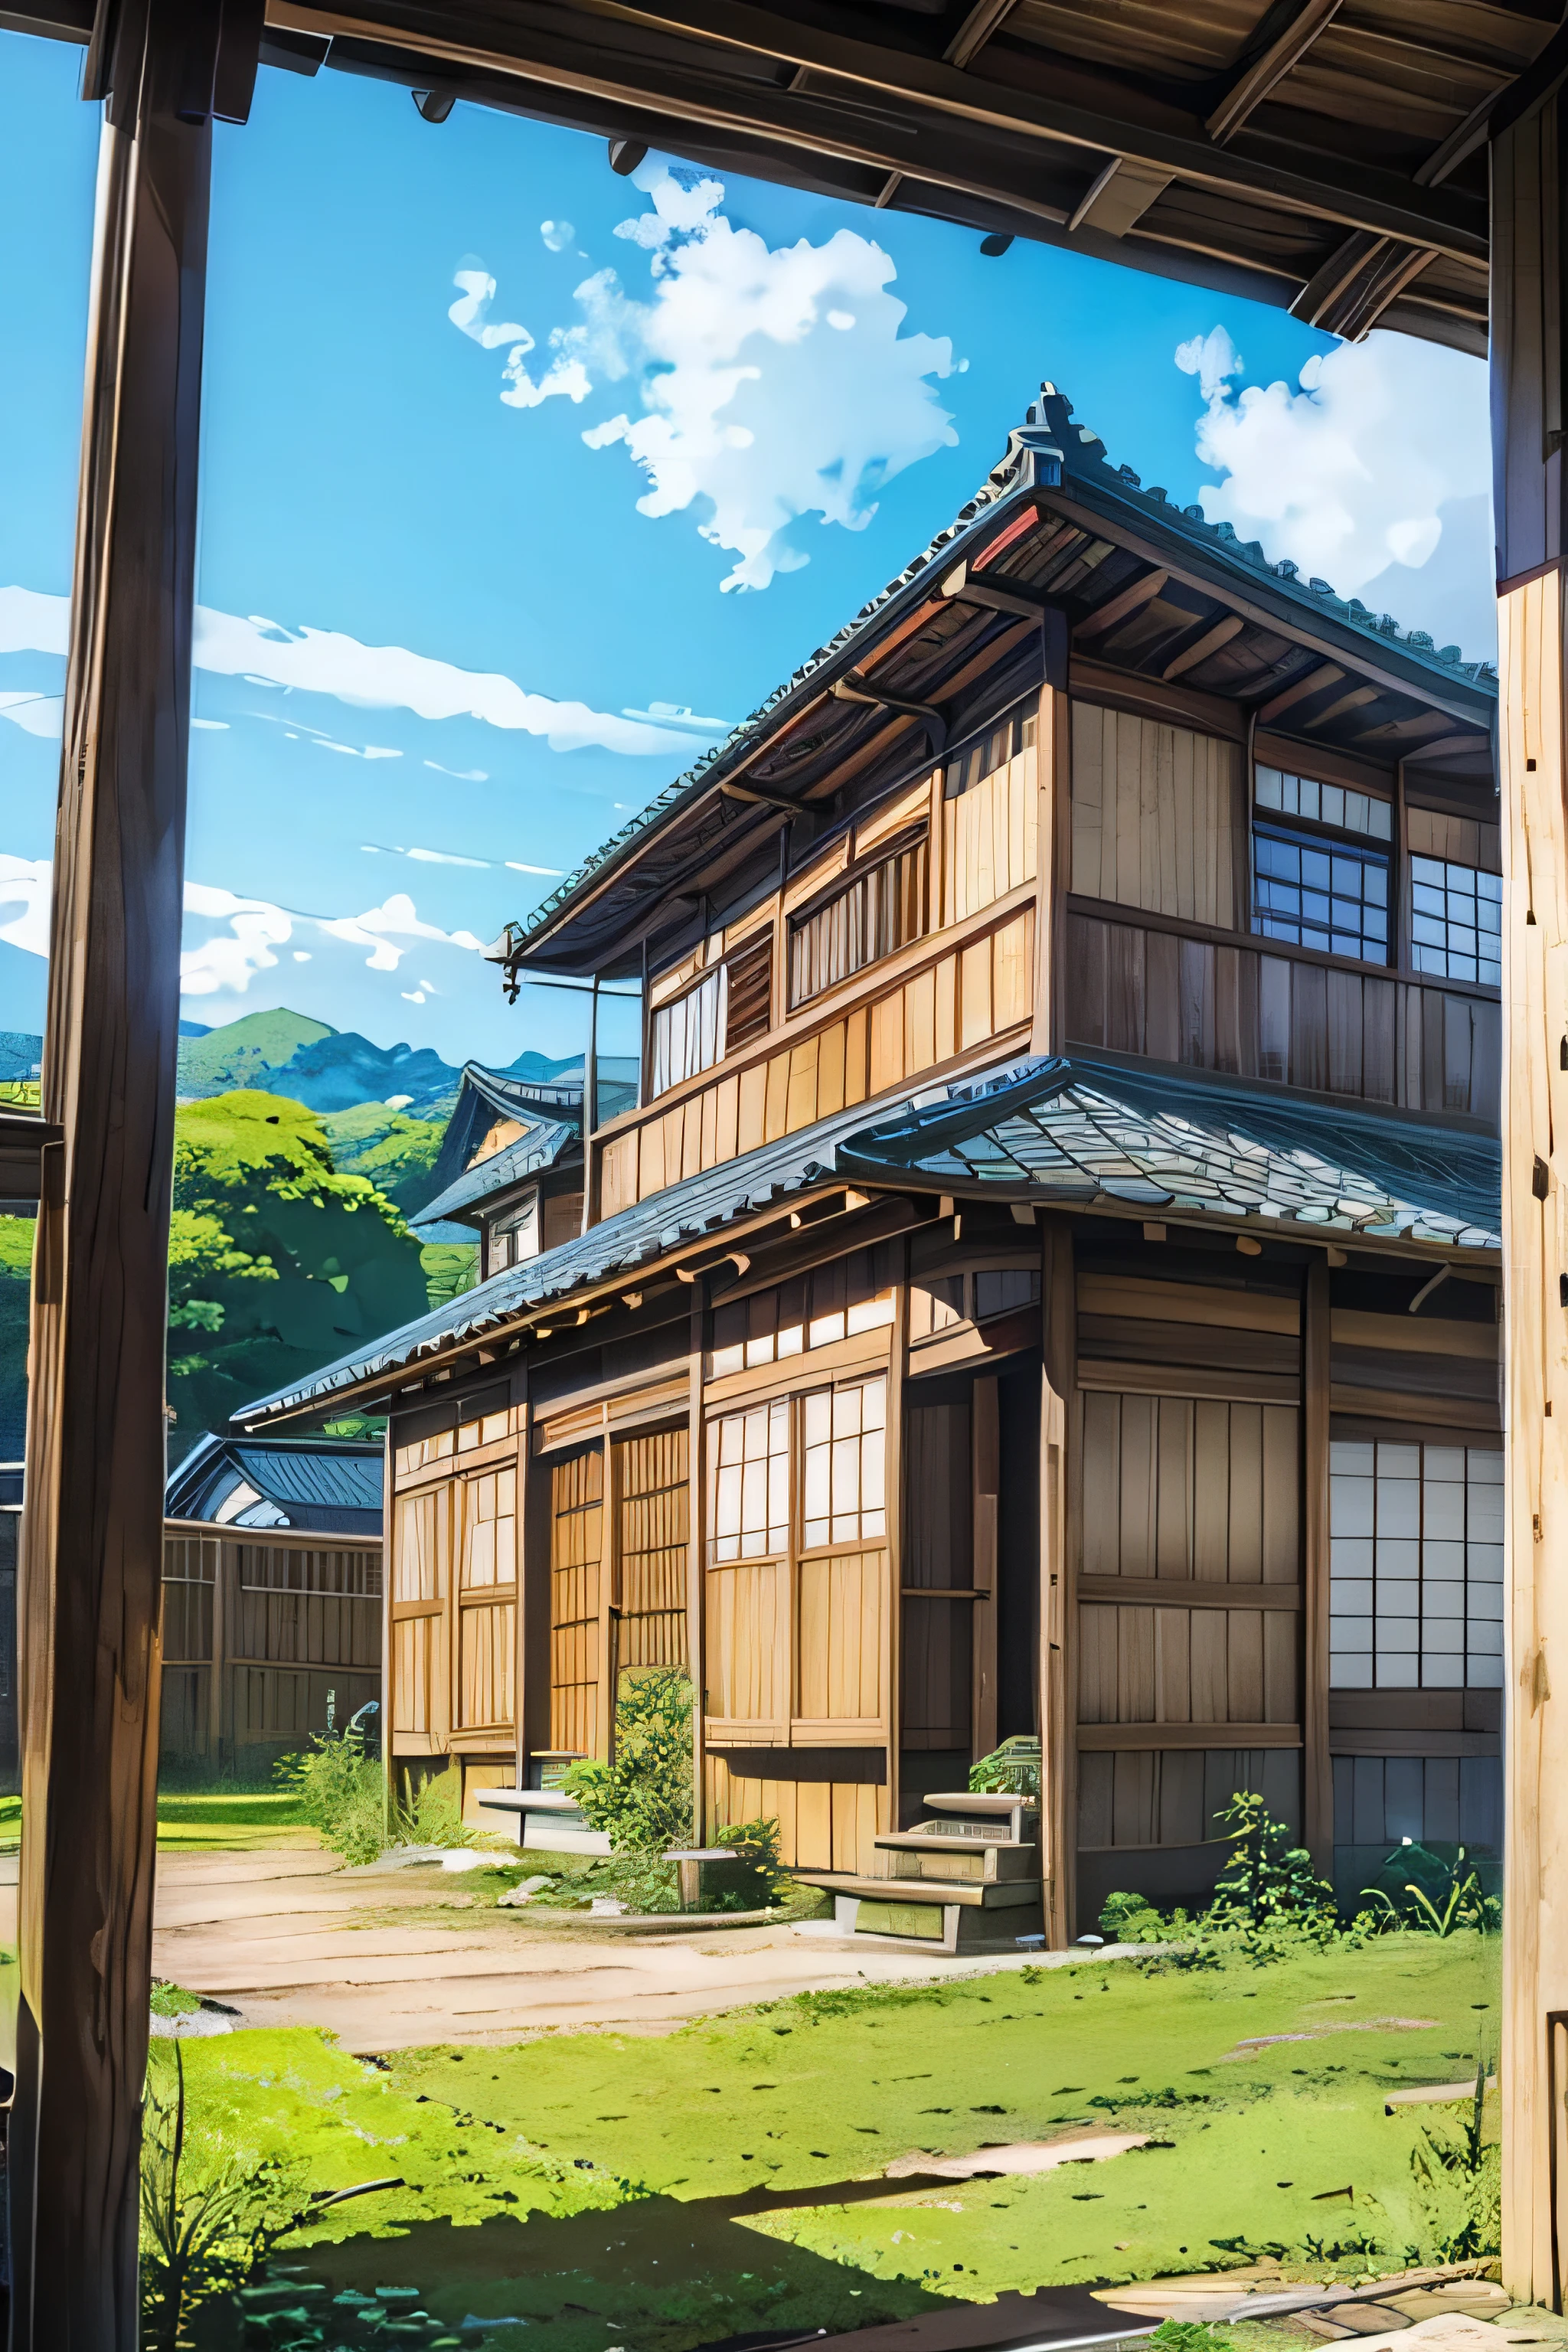 زوايا منخفضة、عدسة واسعة الزاوية、منزل اليابان القديم、traditional wooden house in the دولةside、دولة、سماء زرقاء واسعة、خلفية أنيمي